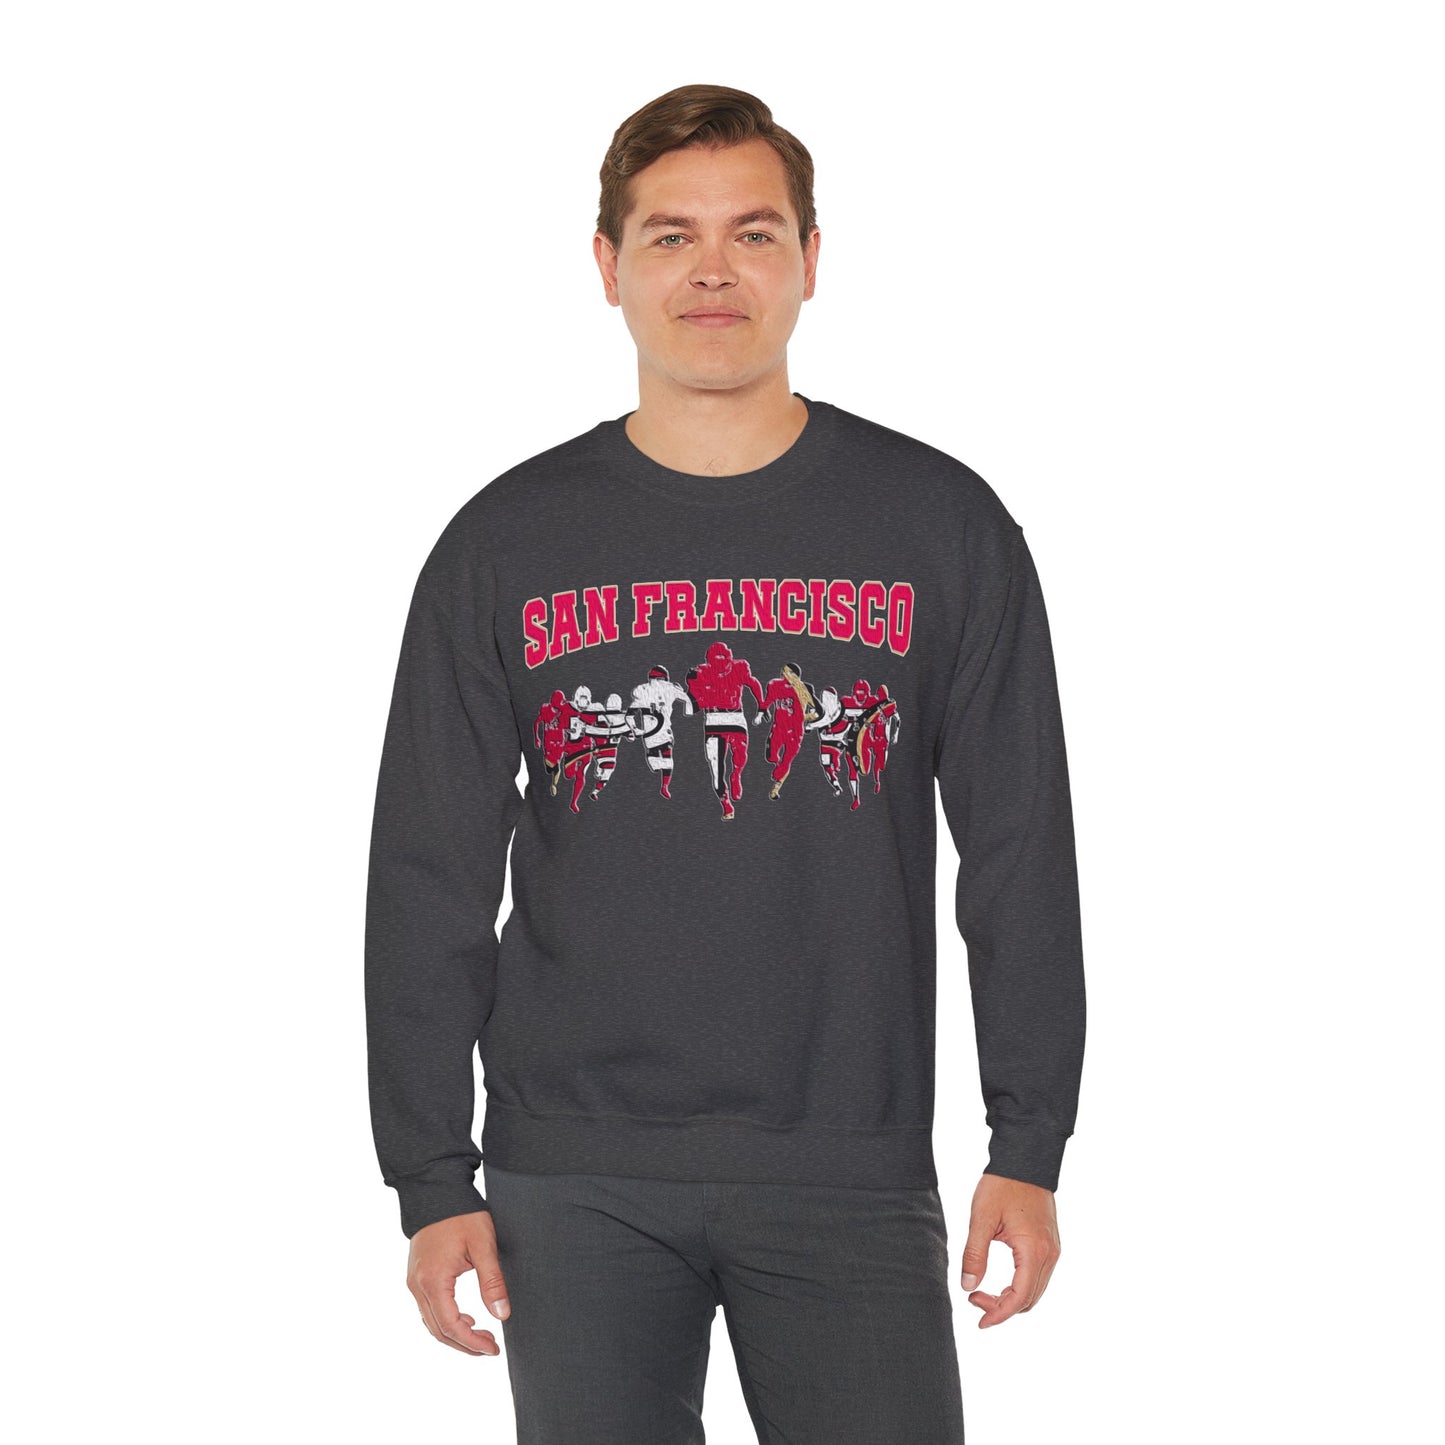 San Francisco Football  - Unisex - Heavy Blend Crewneck Sweatshirt - Oil Paint Print Style